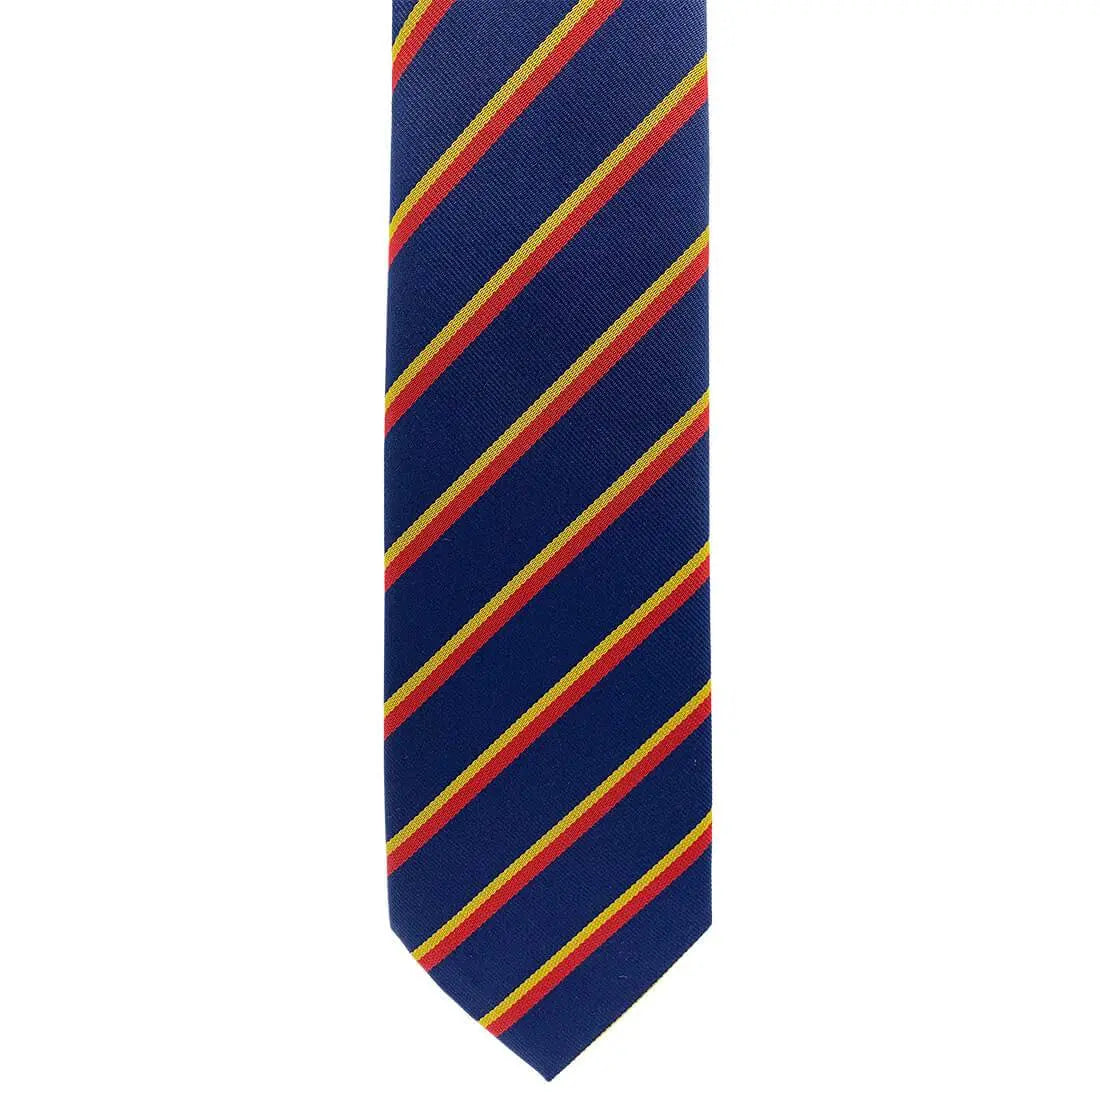 REME Regimental Polyester Tie - John Bull Clothing